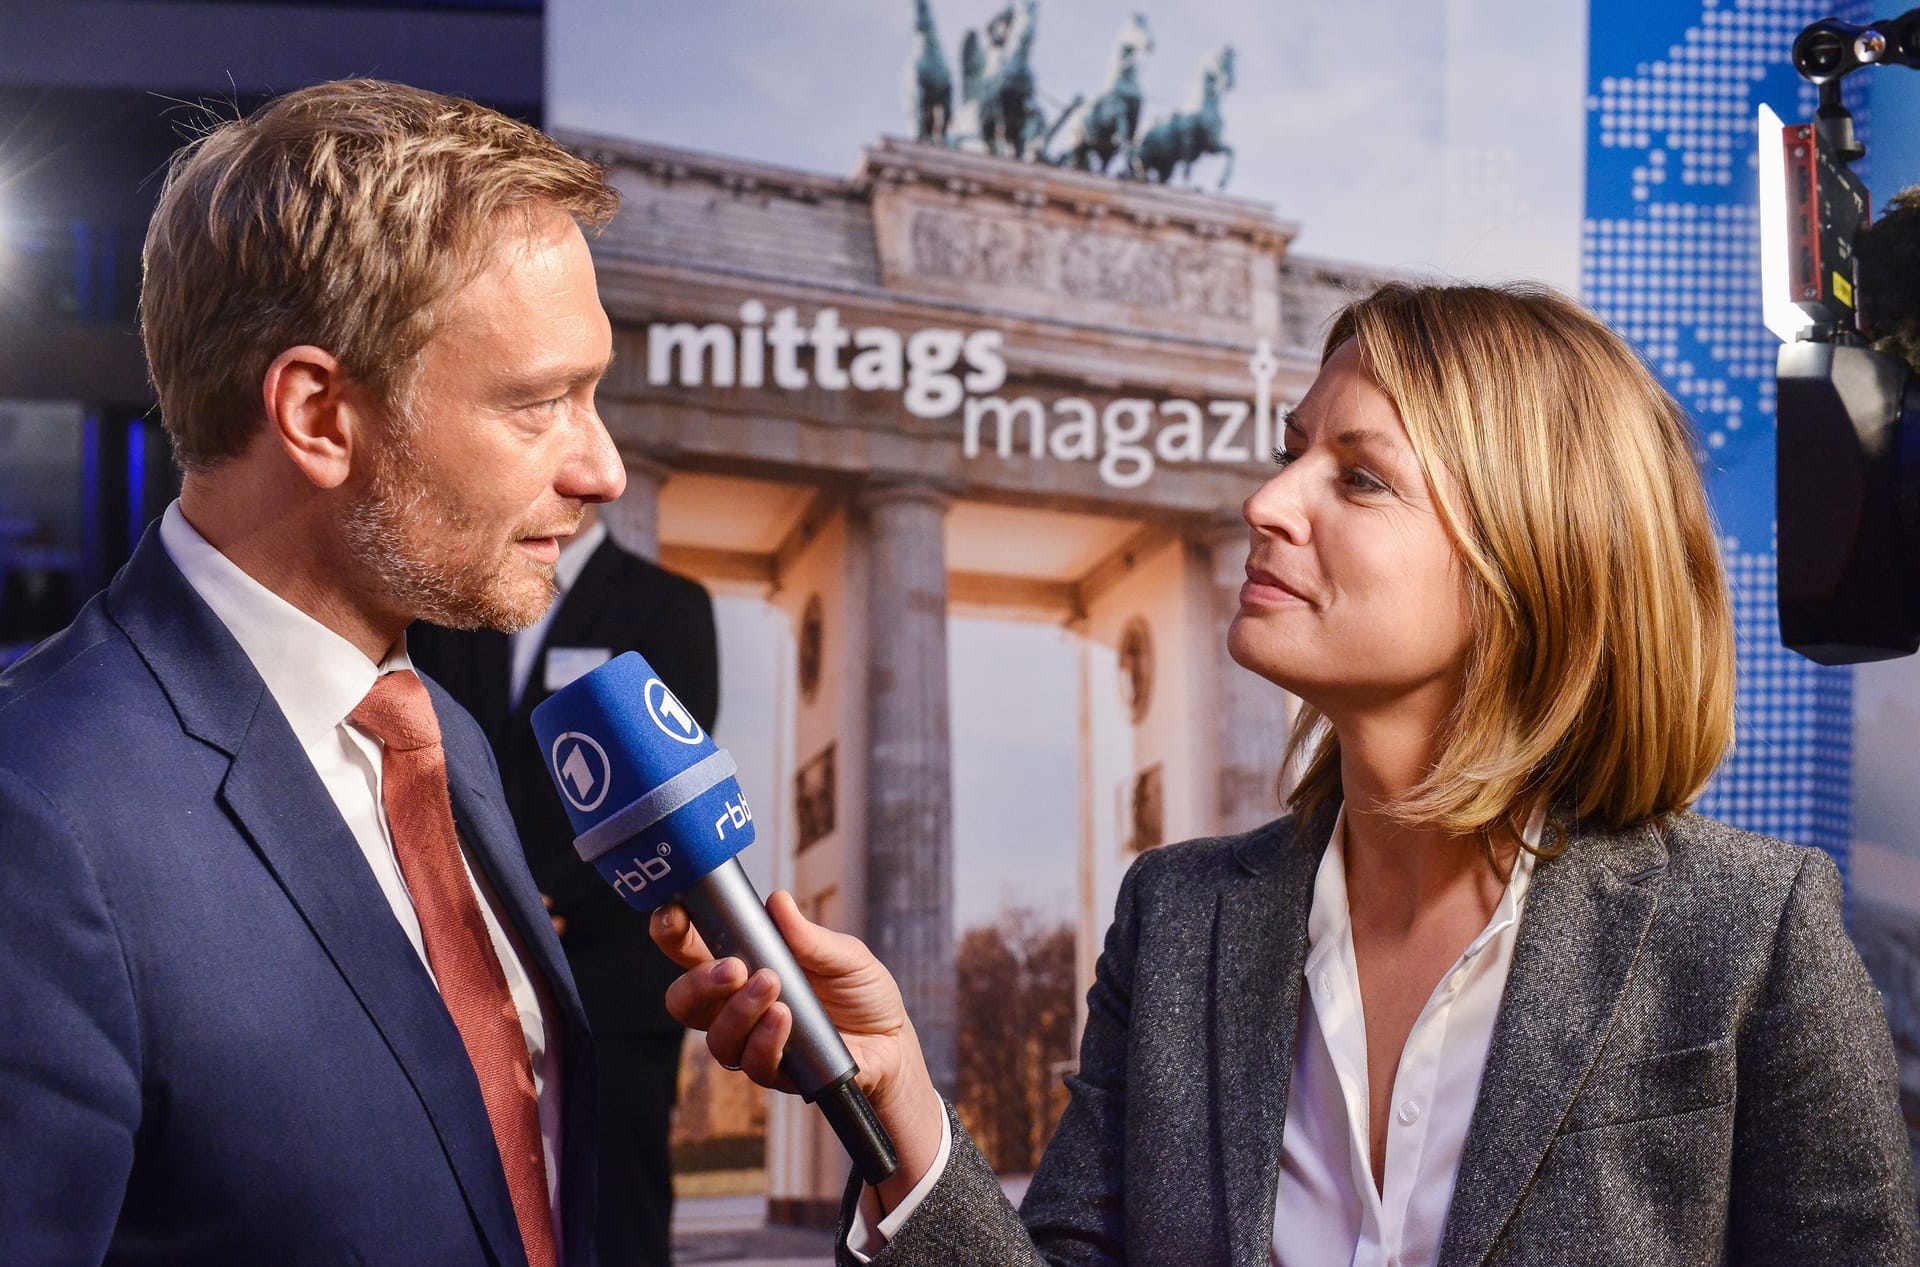 November 2017: Rund 500 Gäste aus Politik, Kultur, Wirtschaft und Medien beim ARD-Hauptstadttreff., das damals neue "Mittagsmagazin" mit Jessy Wellmer führt Interviews.